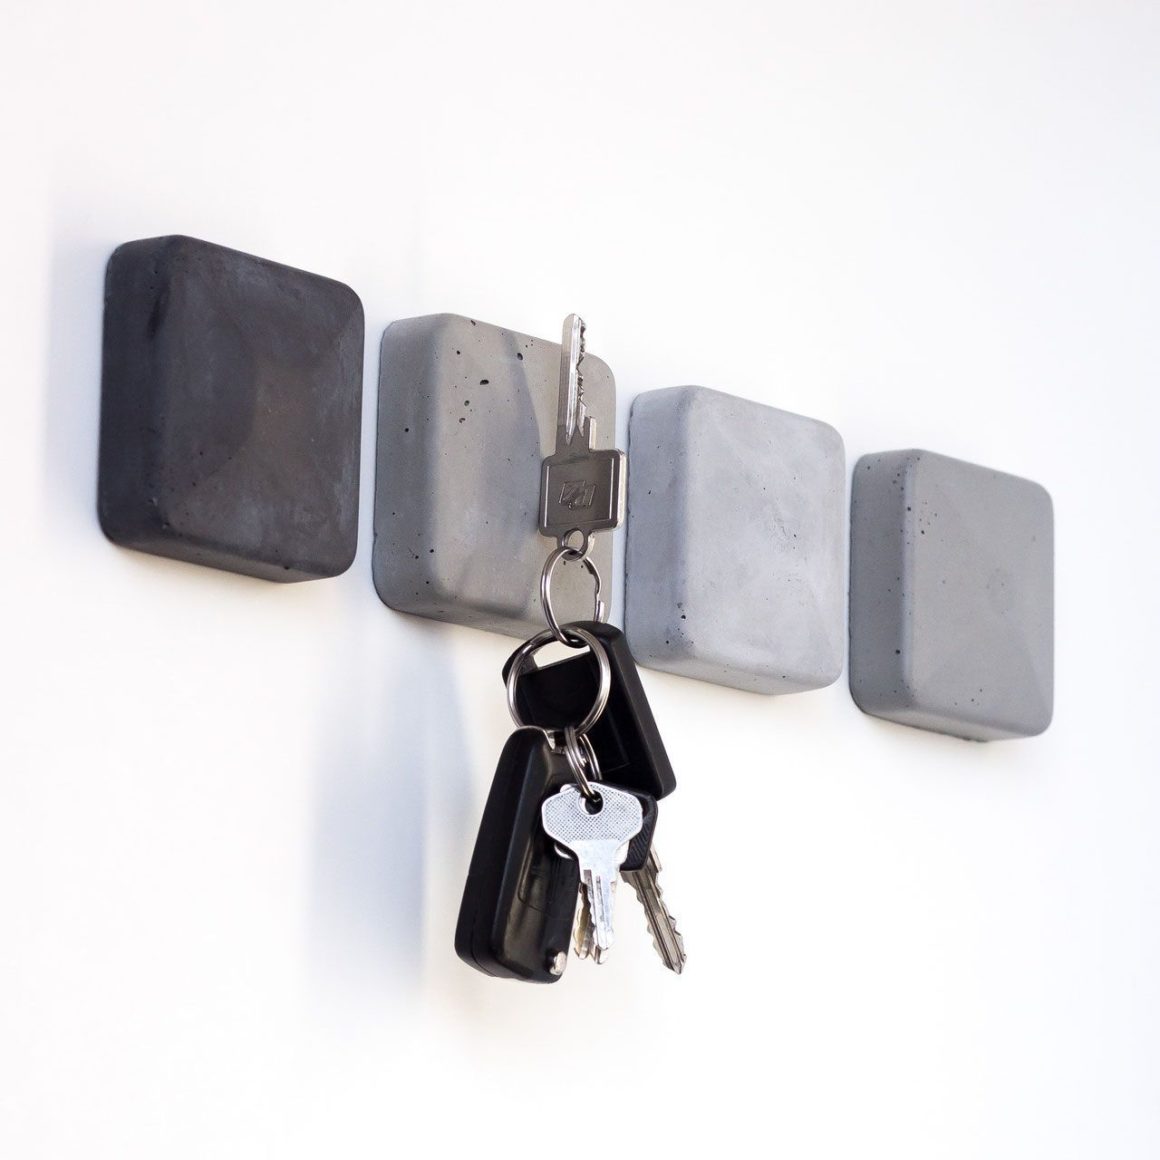 4 cube de béton aimantés pour accrocher ses clés, porte-clés en béton